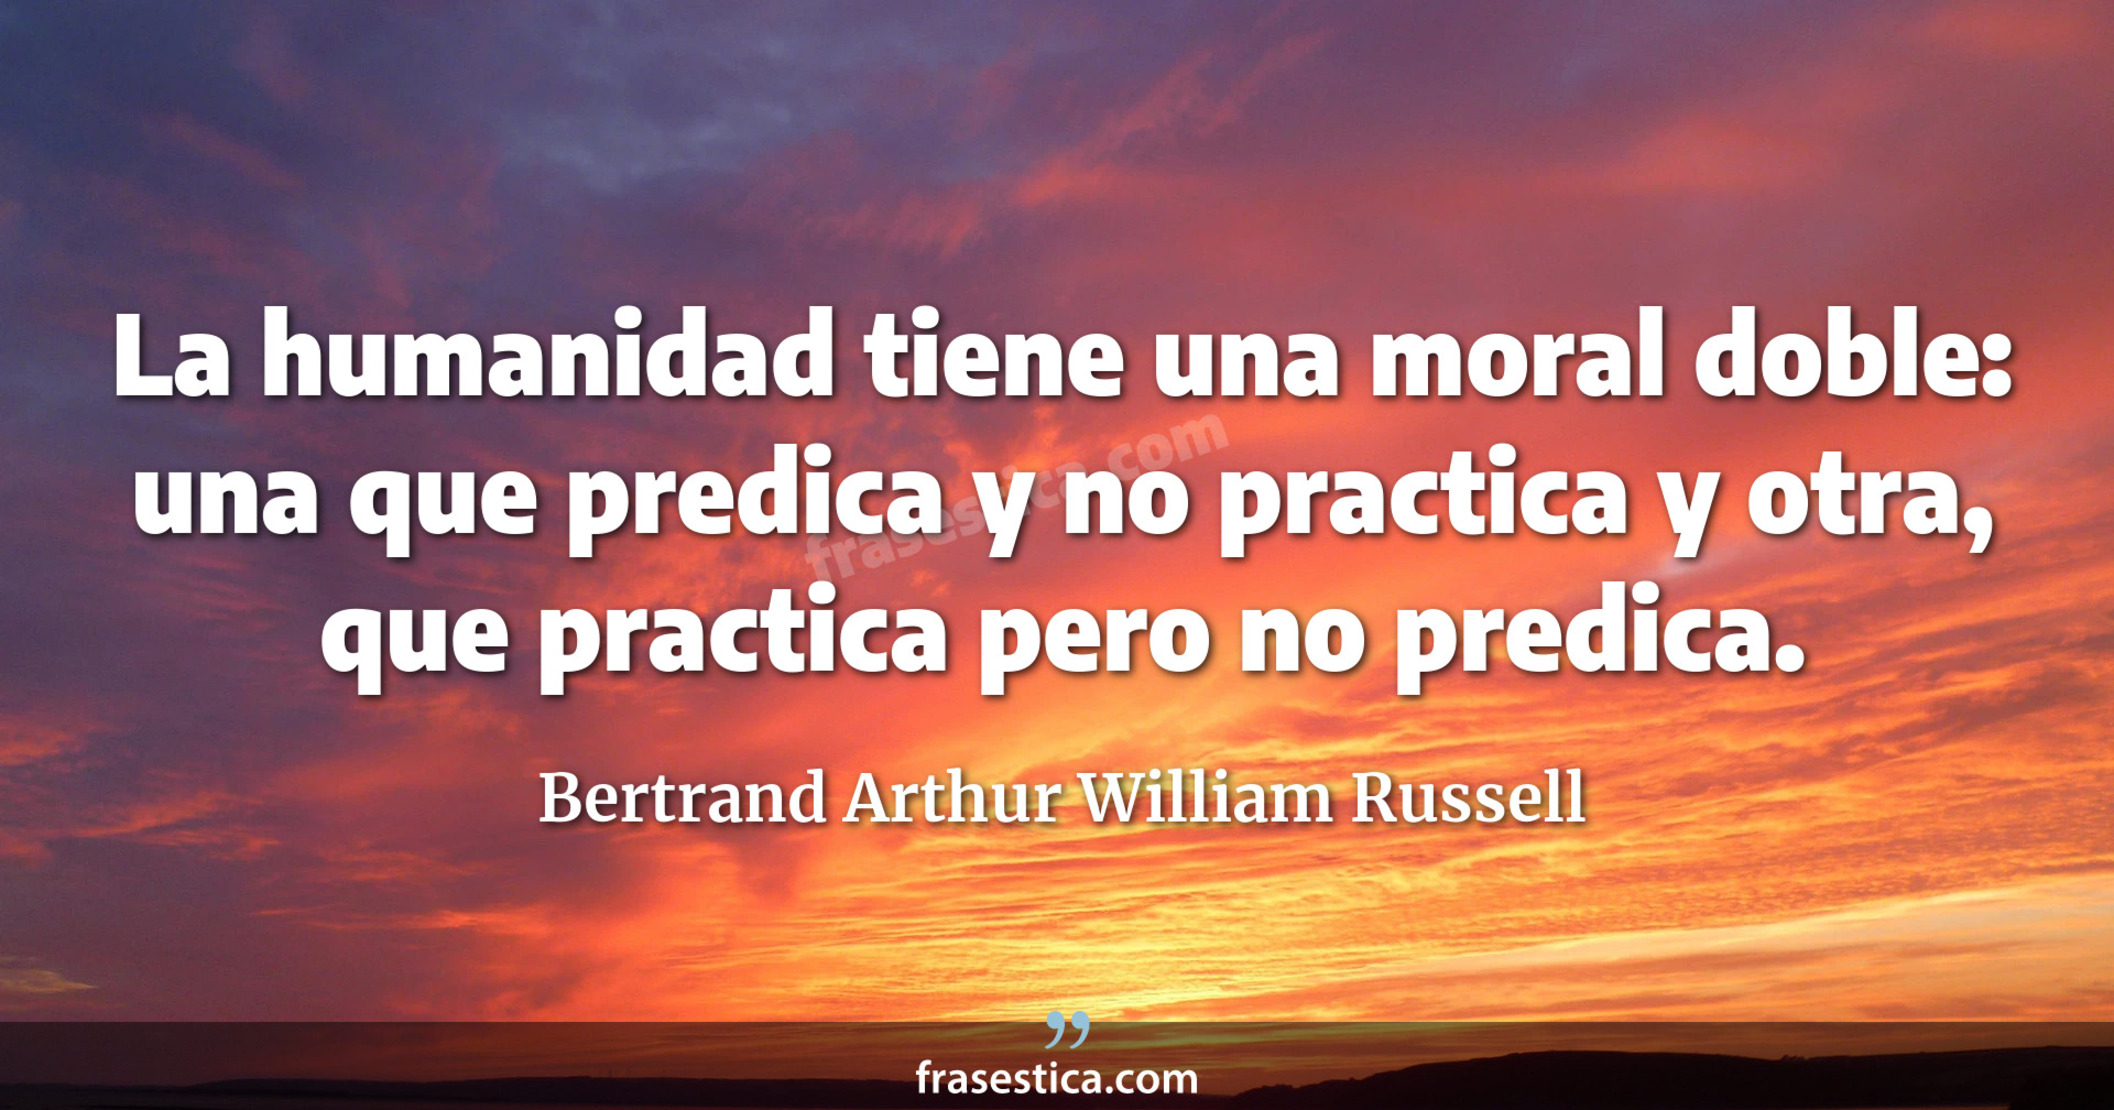 La humanidad tiene una moral doble: una que predica y no practica y otra, que practica pero no predica. - Bertrand Arthur William Russell